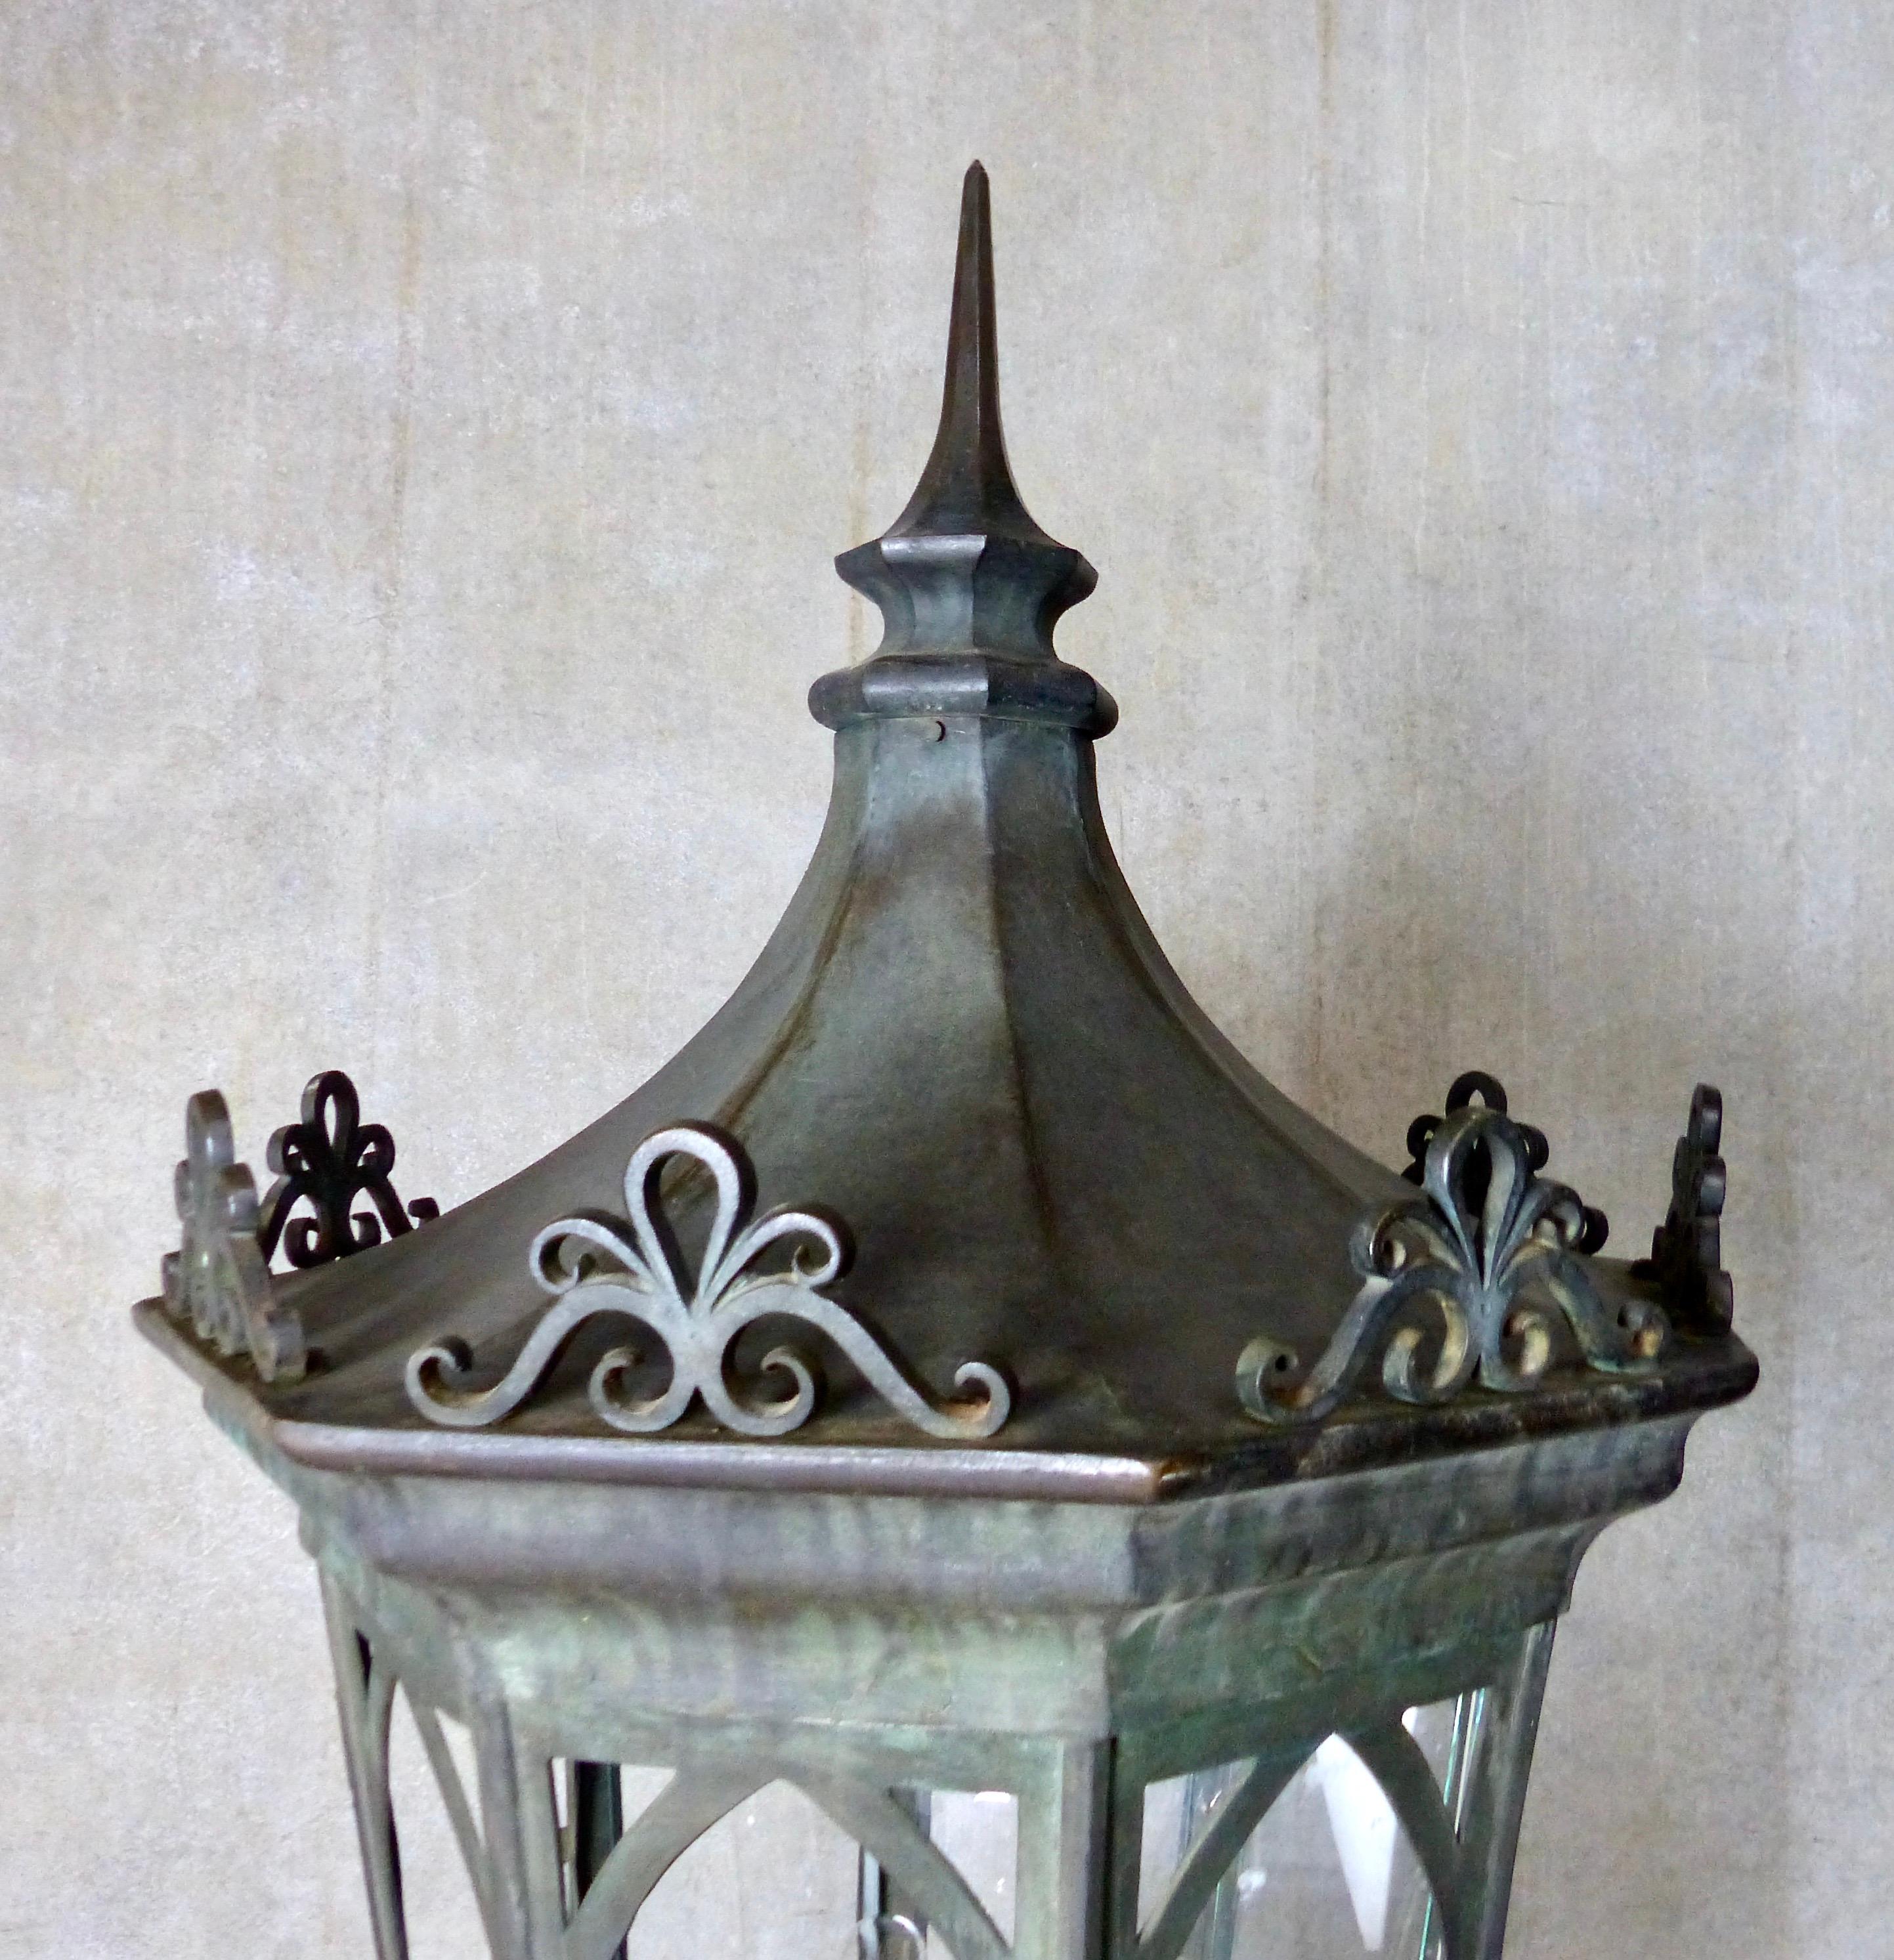 Une lanterne extérieure audacieuse et impressionnante en bronze moulé antique. Taille et poids massifs ; forme octogonale. Il s'agit d'un appareil unique en son genre. On pense qu'il provient du district historique de Fairhaven, dans le nord-ouest